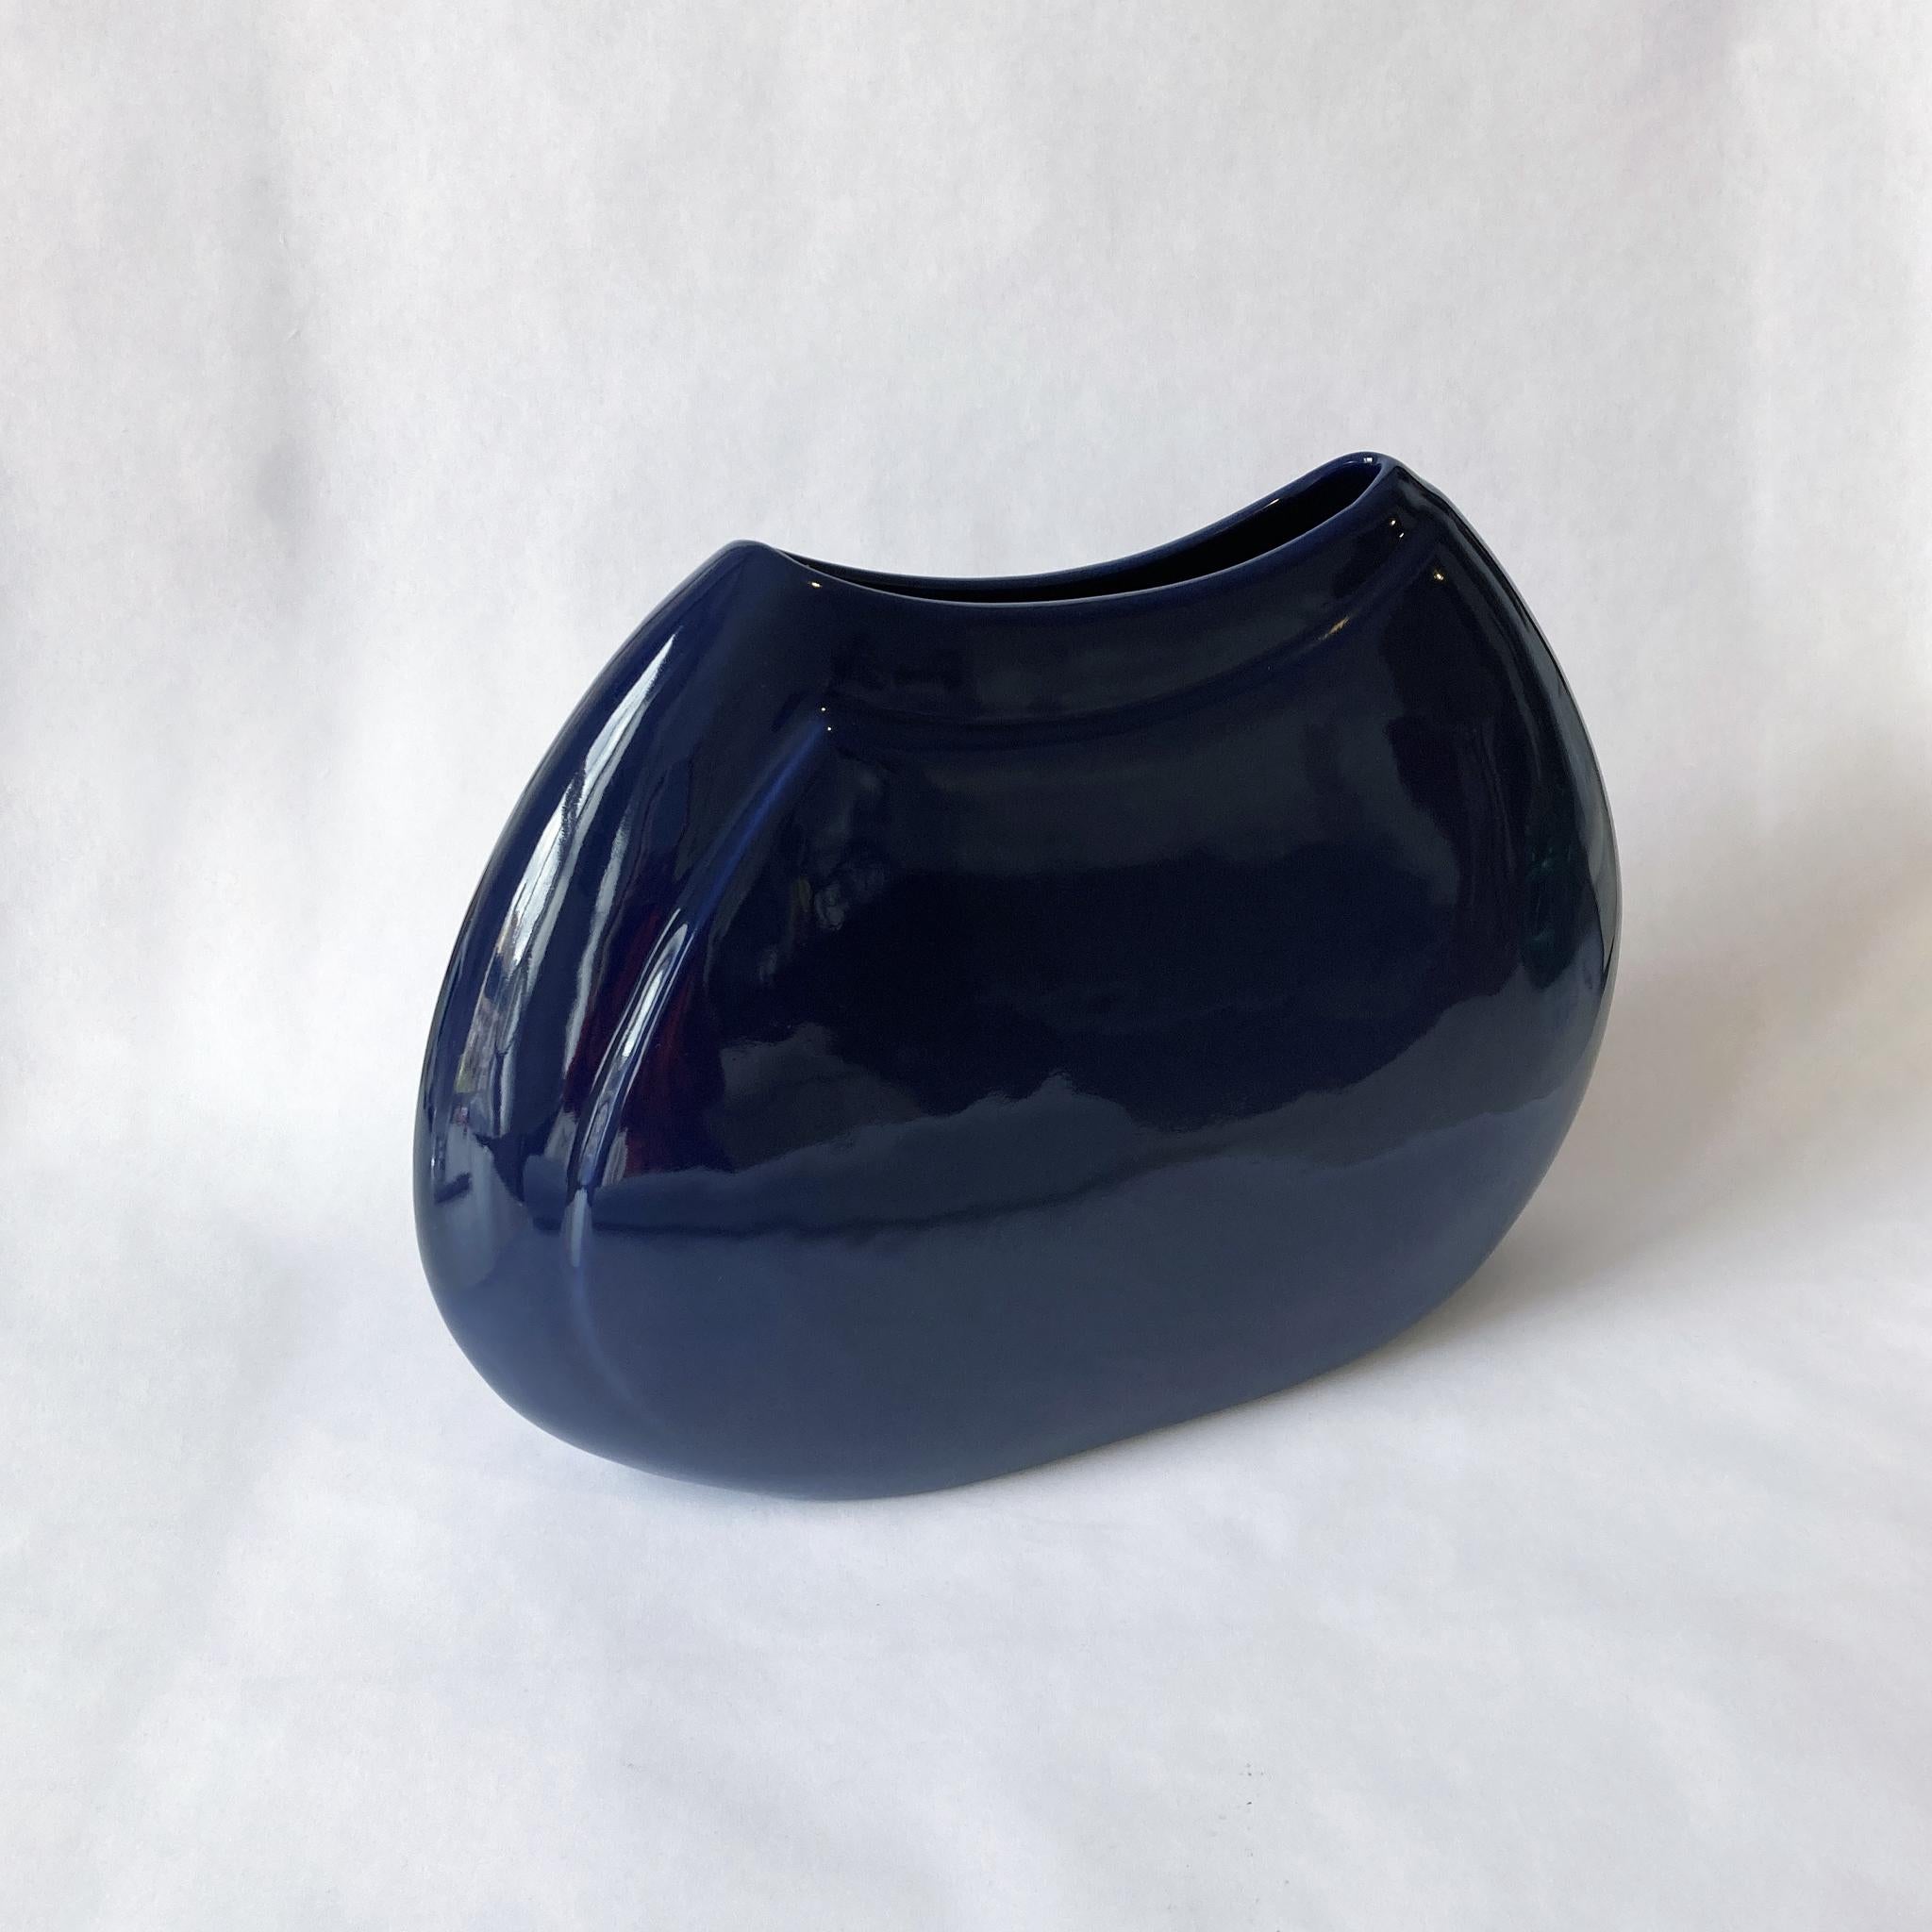 Postmoderne marineblaue Vase von Haeger, mittelgroß. Dieses Stück hat eine breite vordere Silhouette mit einer schmalen Tiefe, sehr auffällig. In gutem Zustand, keine Risse, Chips oder Risse. Wunderschön für sich allein oder in Kombination mit